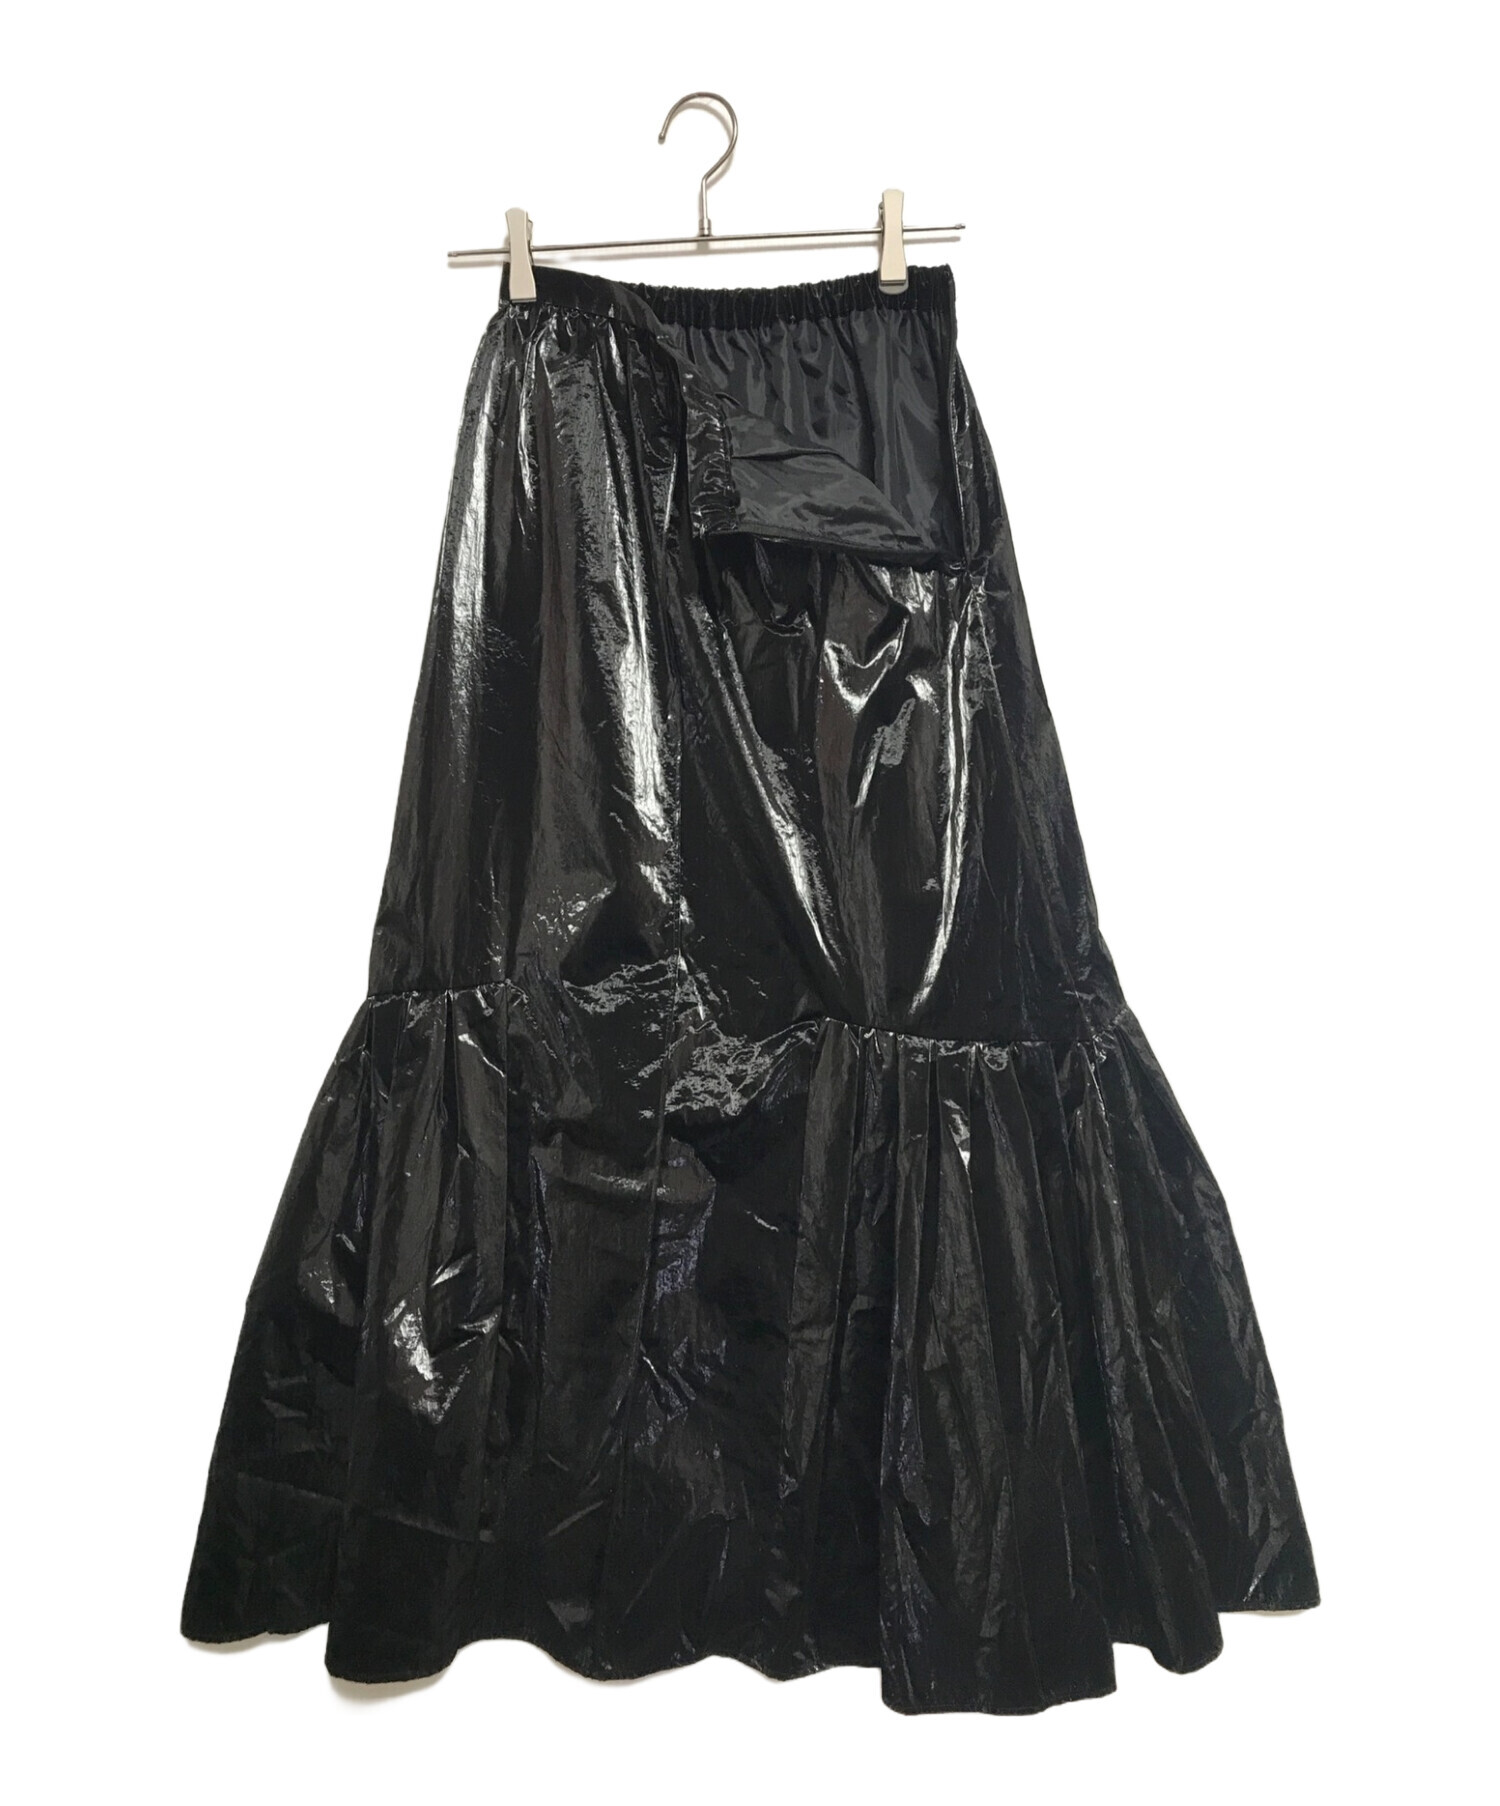 PUBLIC TOKYO (パブリックトウキョウ) グリッターロングスカート ブラック サイズ:FREE